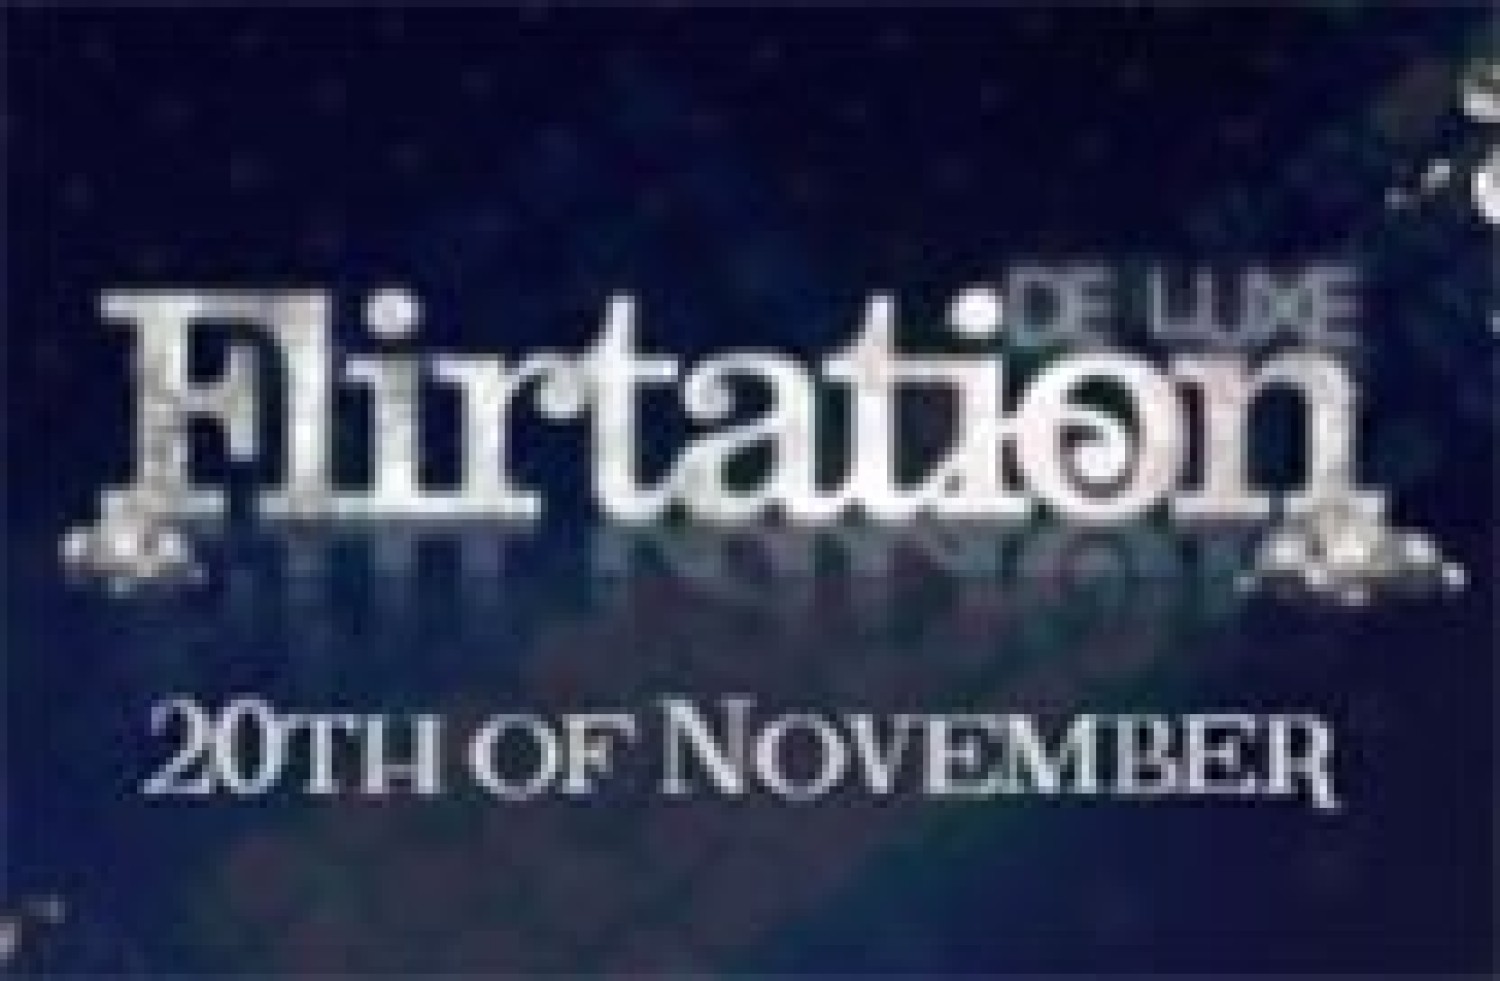 Party nieuws: Flirtation is terug op vrijdag 20 november in Panama